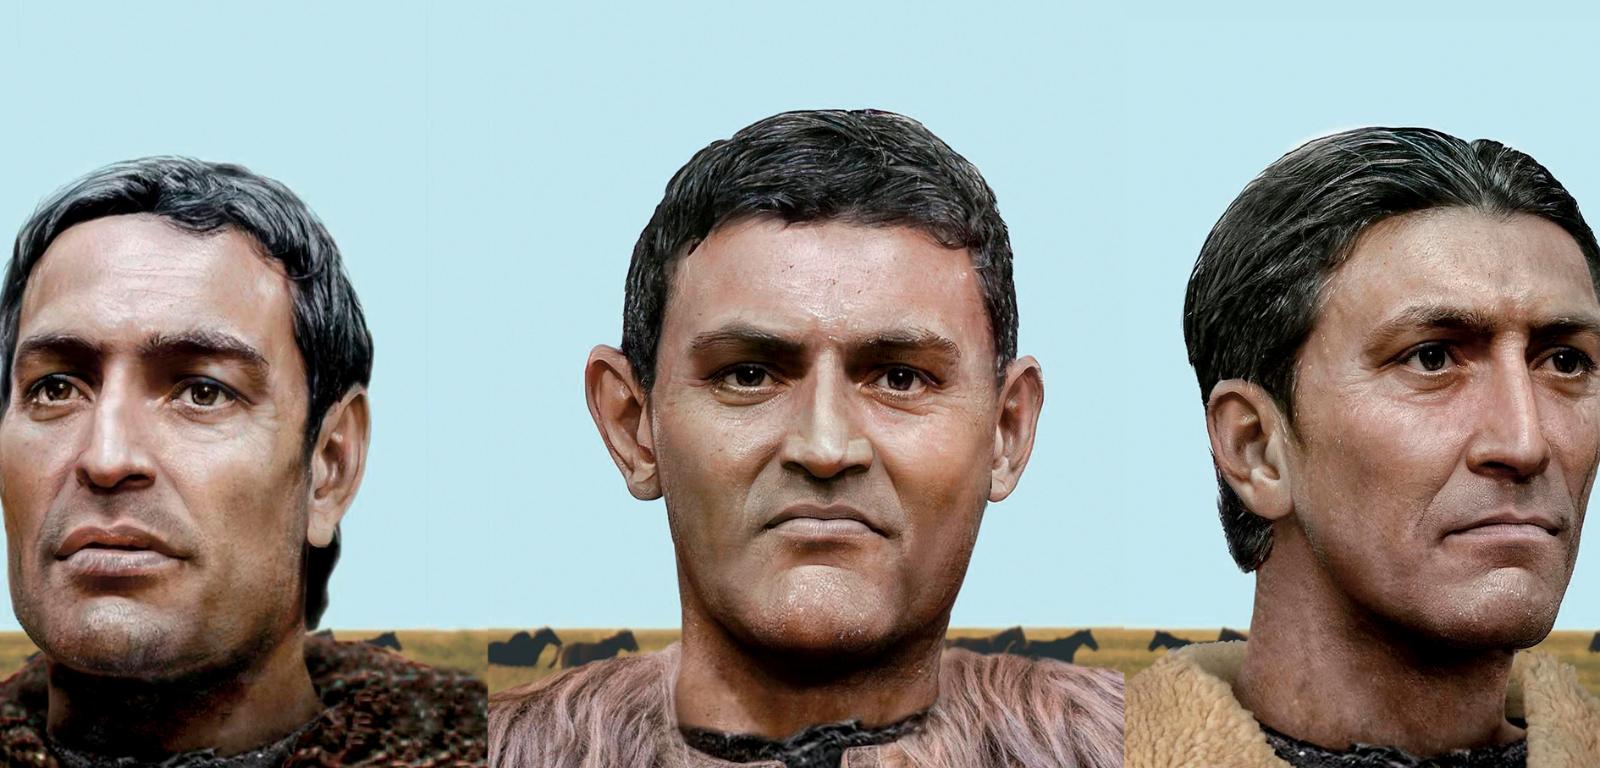 Wykonana na podstawie czaszek komputerowa rekonstrukcja twarzy przedstawicieli kultury grobów jamowych uważanych za Indoeuropejczyków.